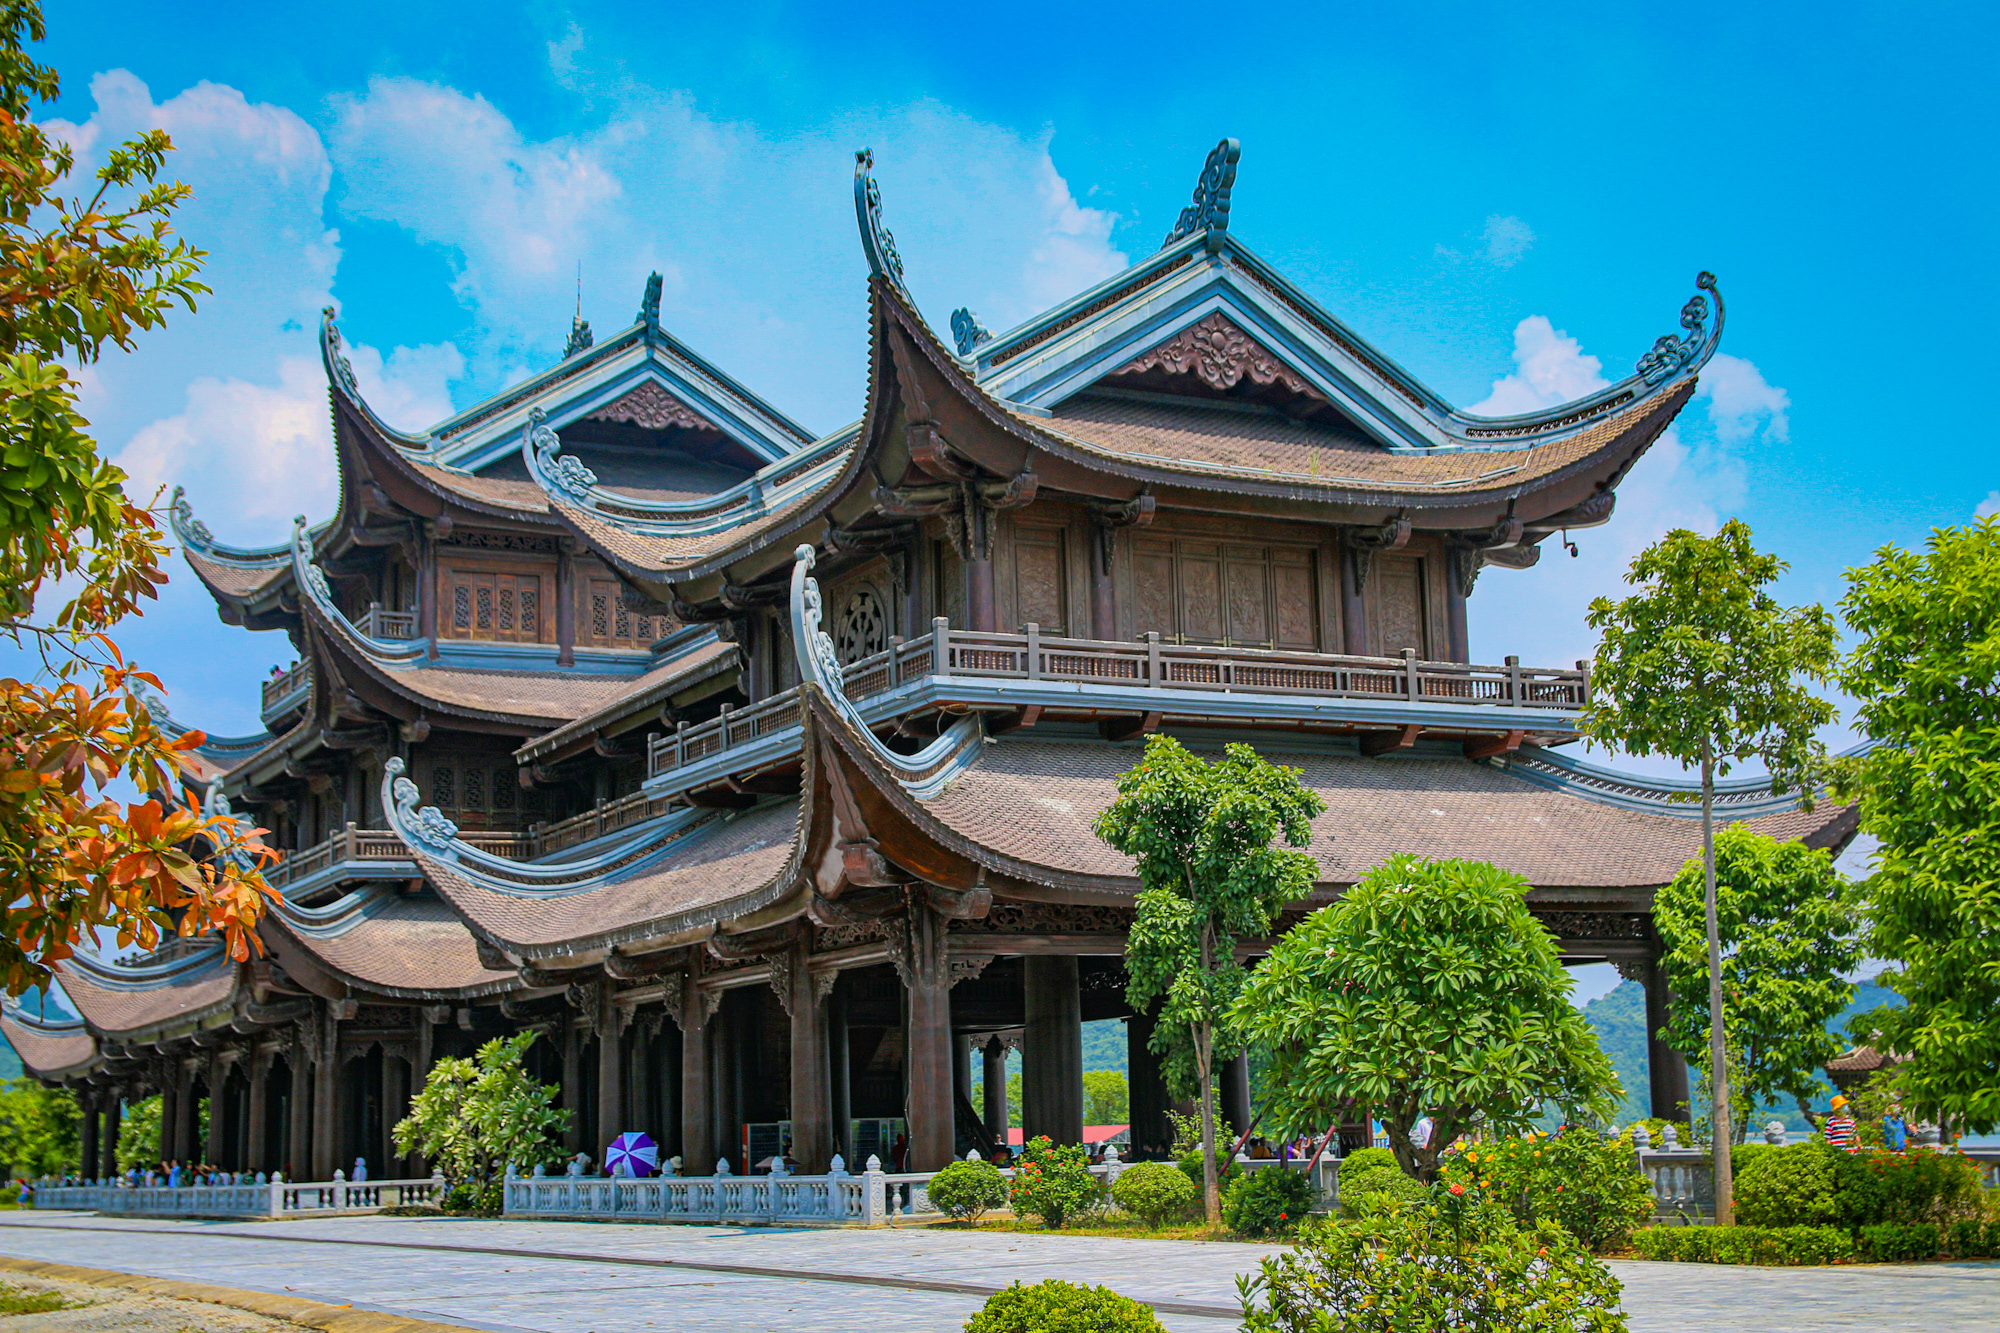 Ngôi chùa rộng gấp 10 lần quận Hoàn Kiếm, xây nửa thế kỷ mới xong - Ảnh 5.